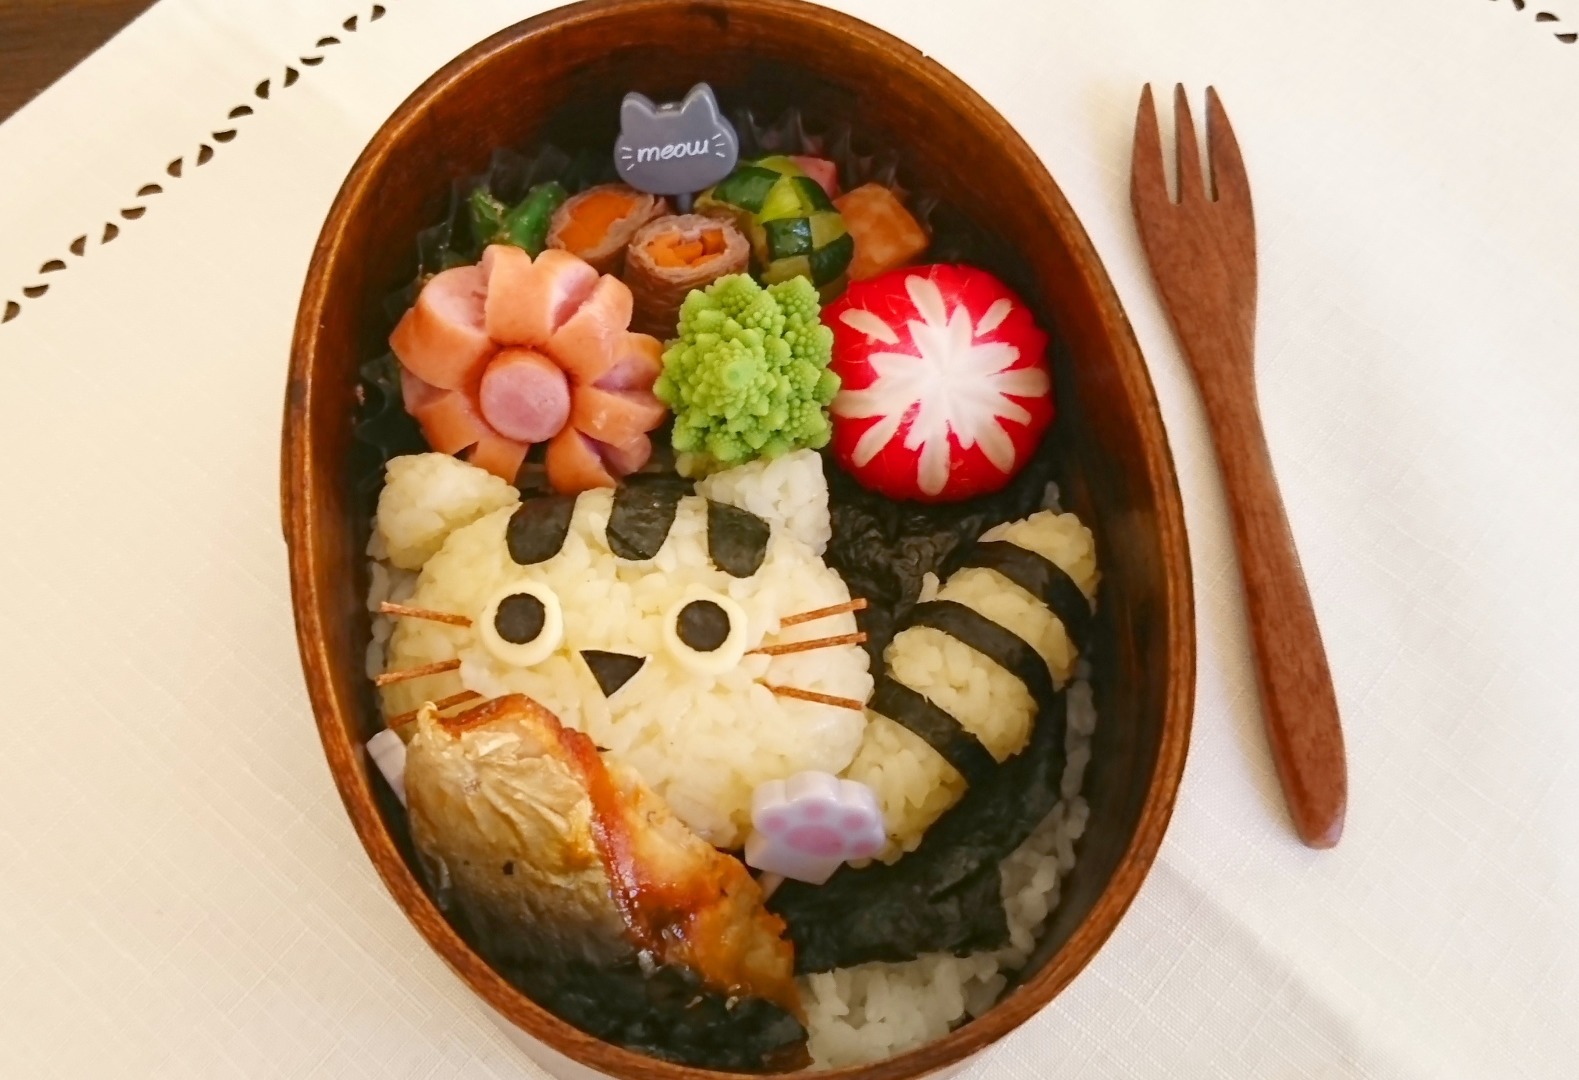 Yumimamaが投稿したフォト お魚くわえた猫ちゃんわっぱ弁当 猫ちゃんの顔おにぎりとしっぽ 19 11 15 15 23 48 Limia リミア